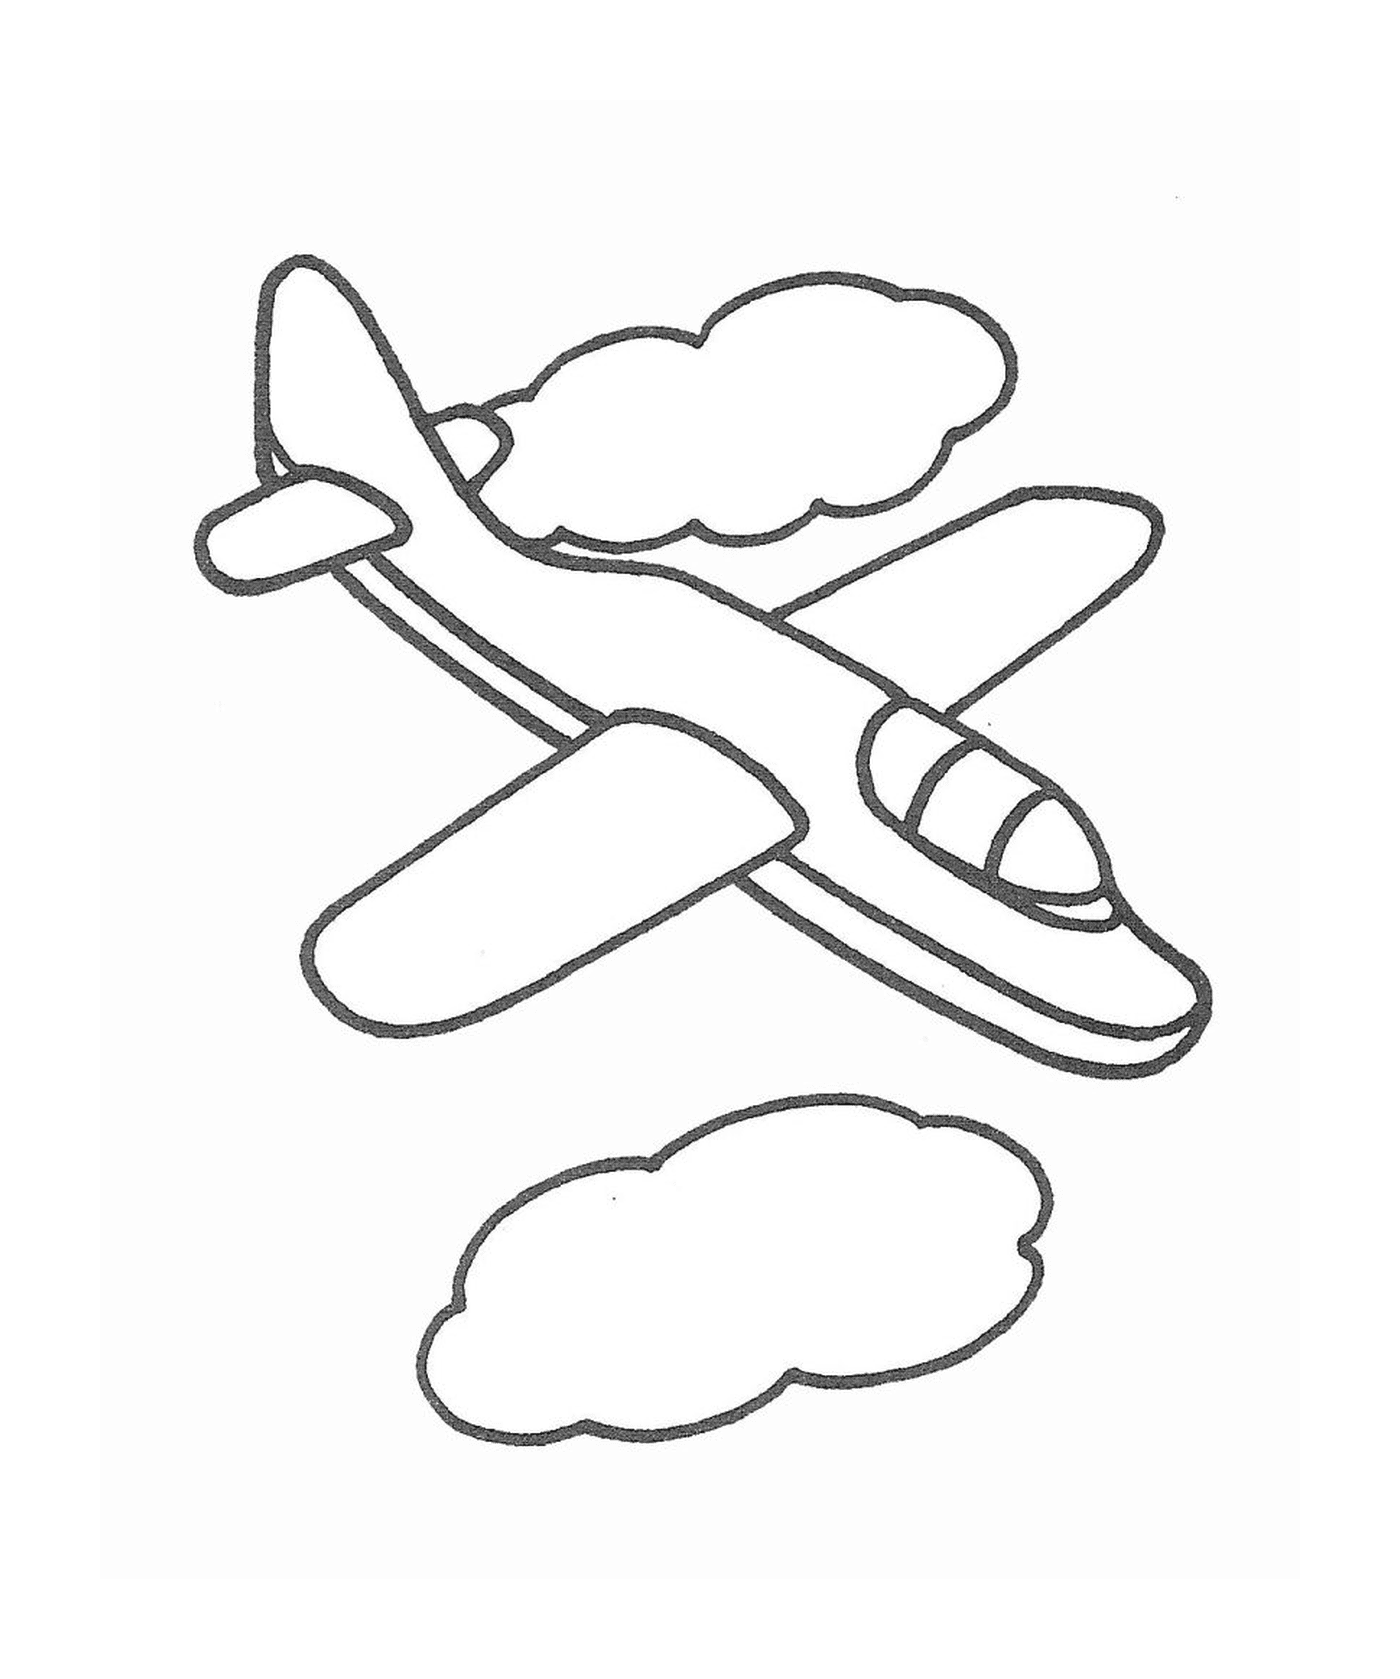  Um avião voa no céu com nuvens 